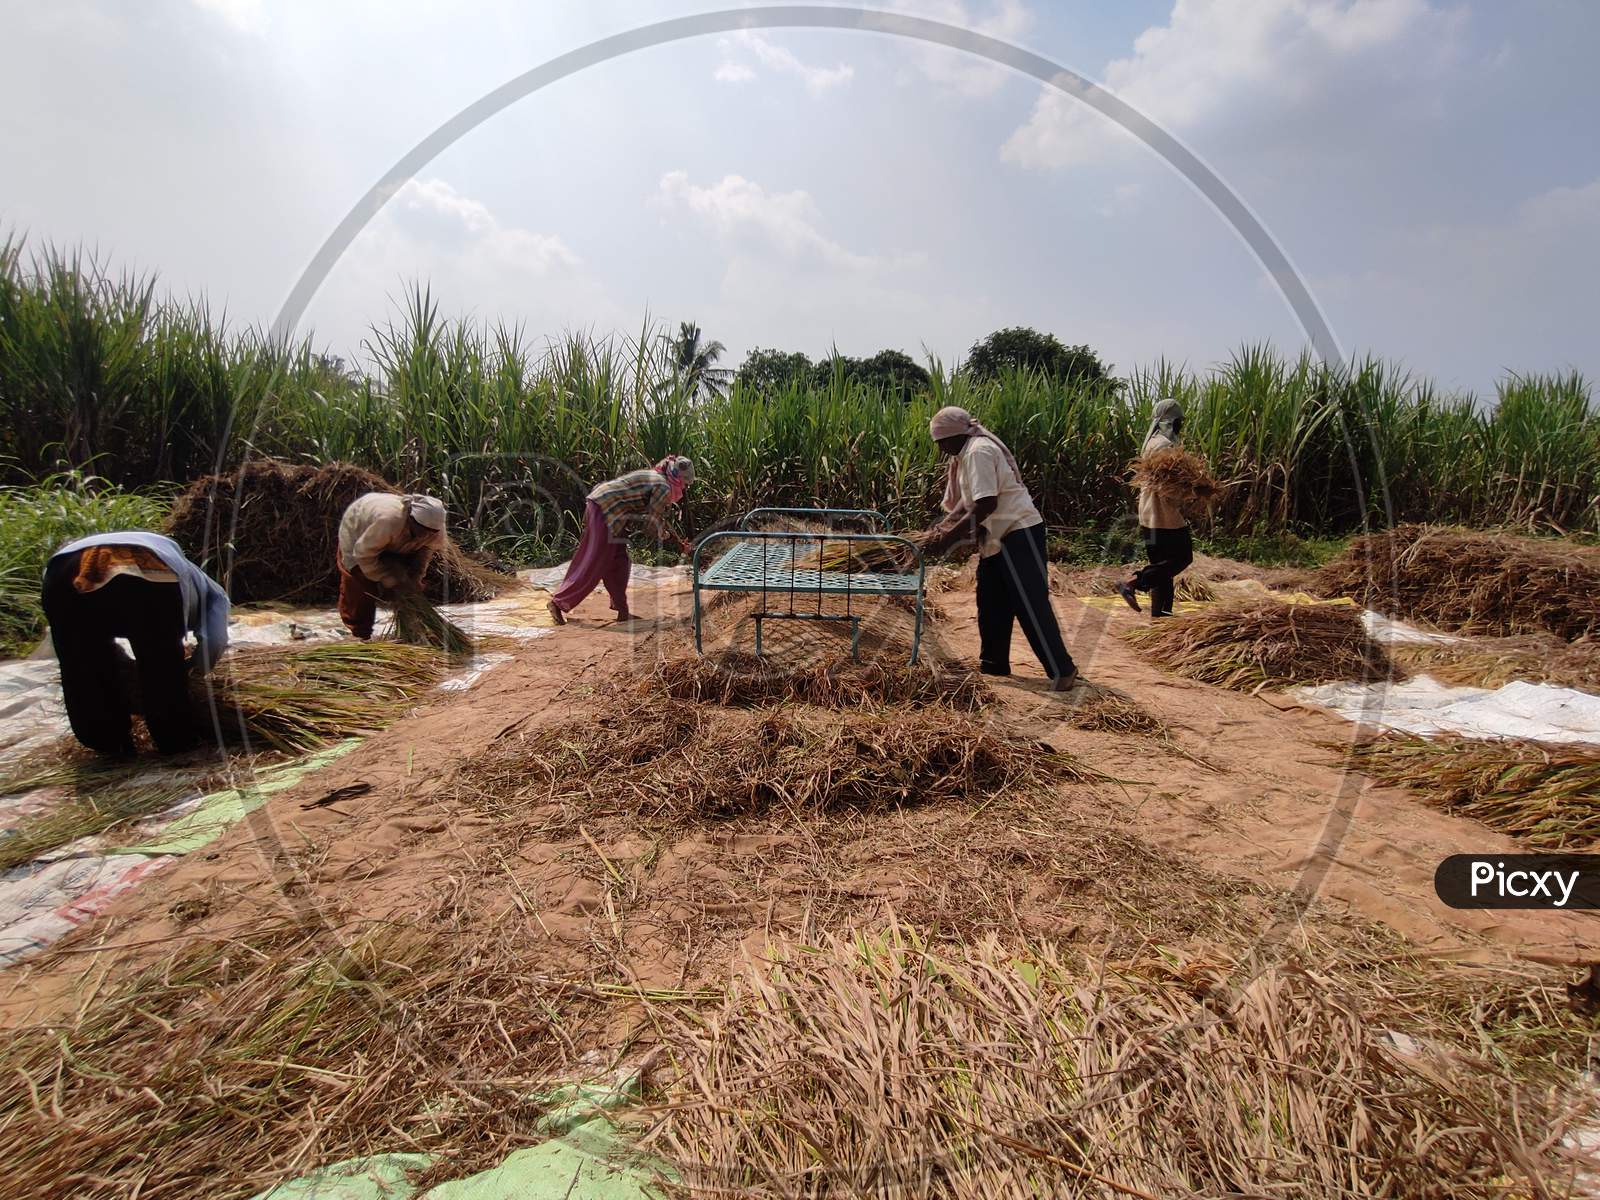 cutting of rice field Maharashtra